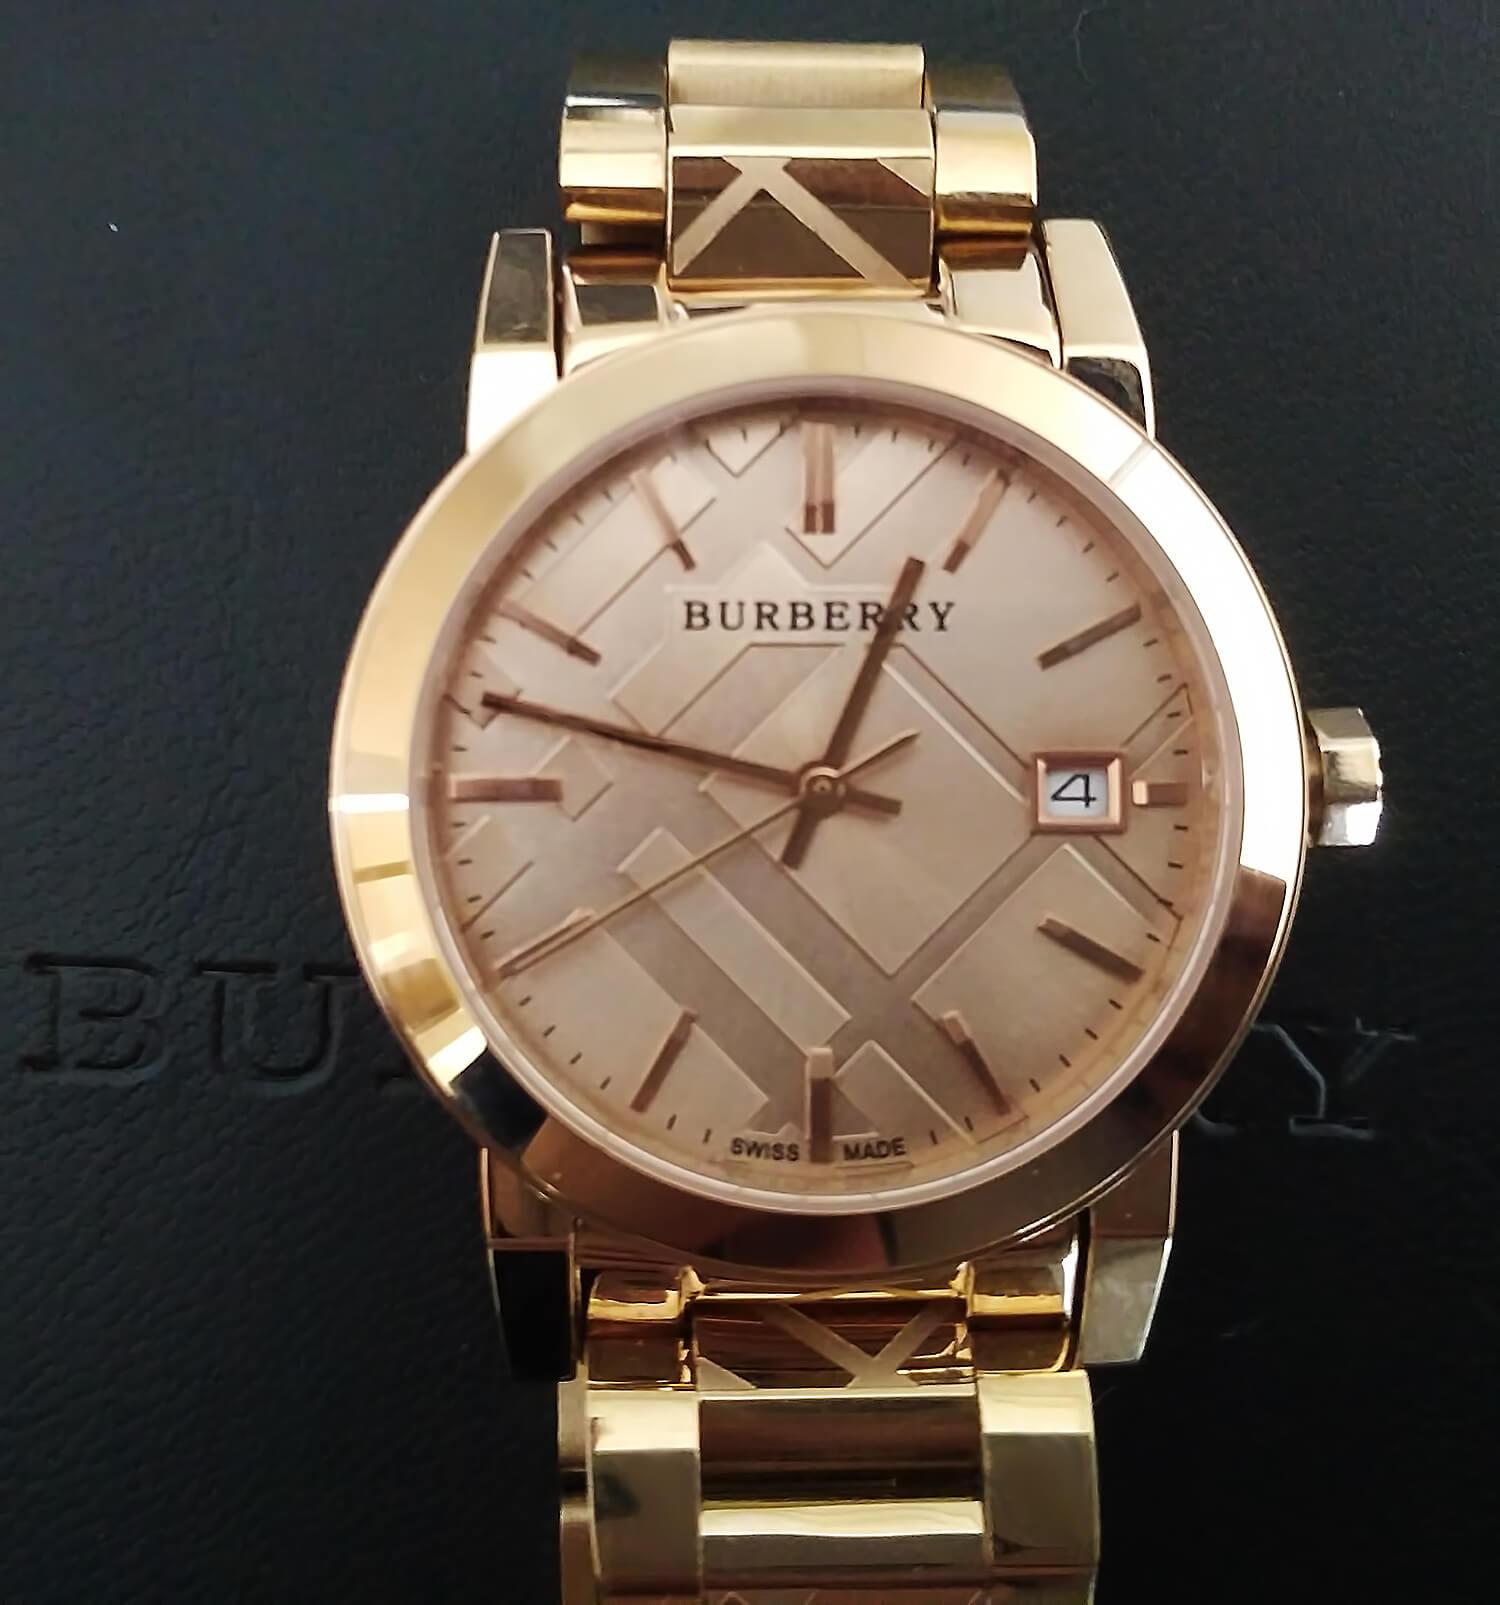 Циферблат часов Burberry City Unisex Watch оформлен в лаконично-элегантном стиле и декорирован геометрическим рисунком